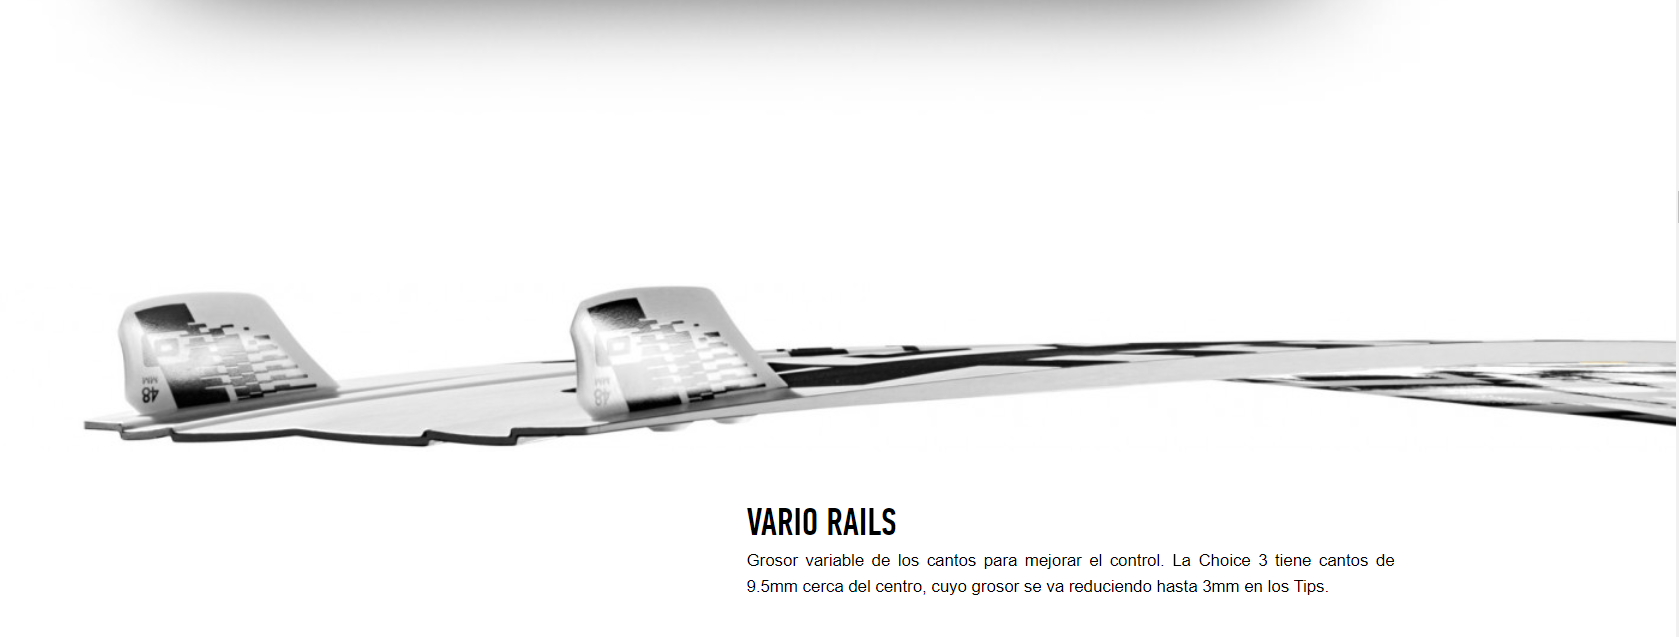 VARIO RAILS Grosor variable de los cantos para mejorar el control. La Choice 3 tiene cantos de 9.5mm cerca del centro, cuyo grosor se va reduciendo hasta 3mm en los Tips.